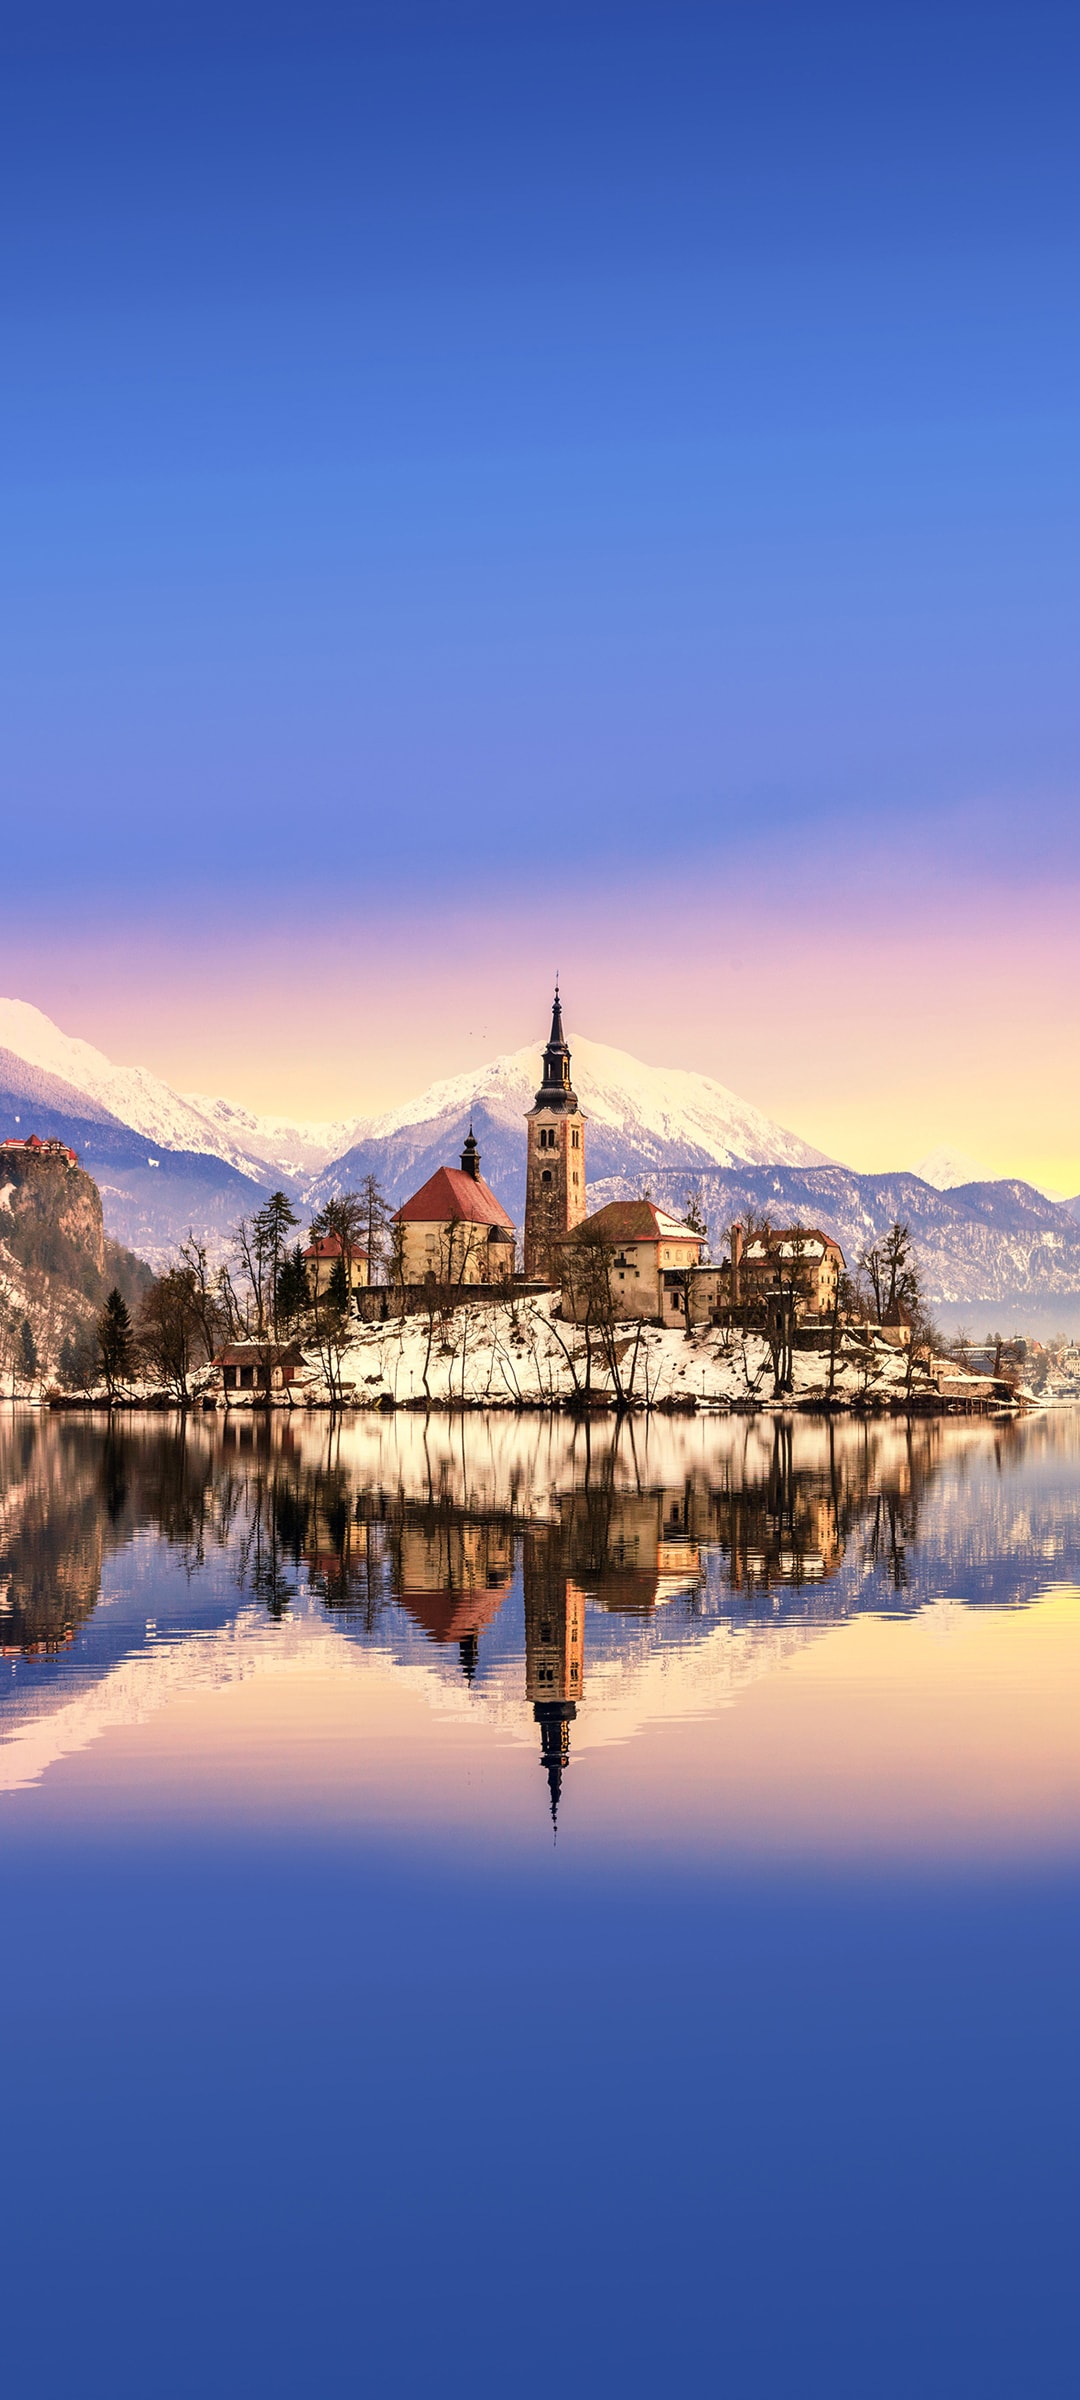 斯洛文尼亚清澈湖泊冬季风景手机壁纸